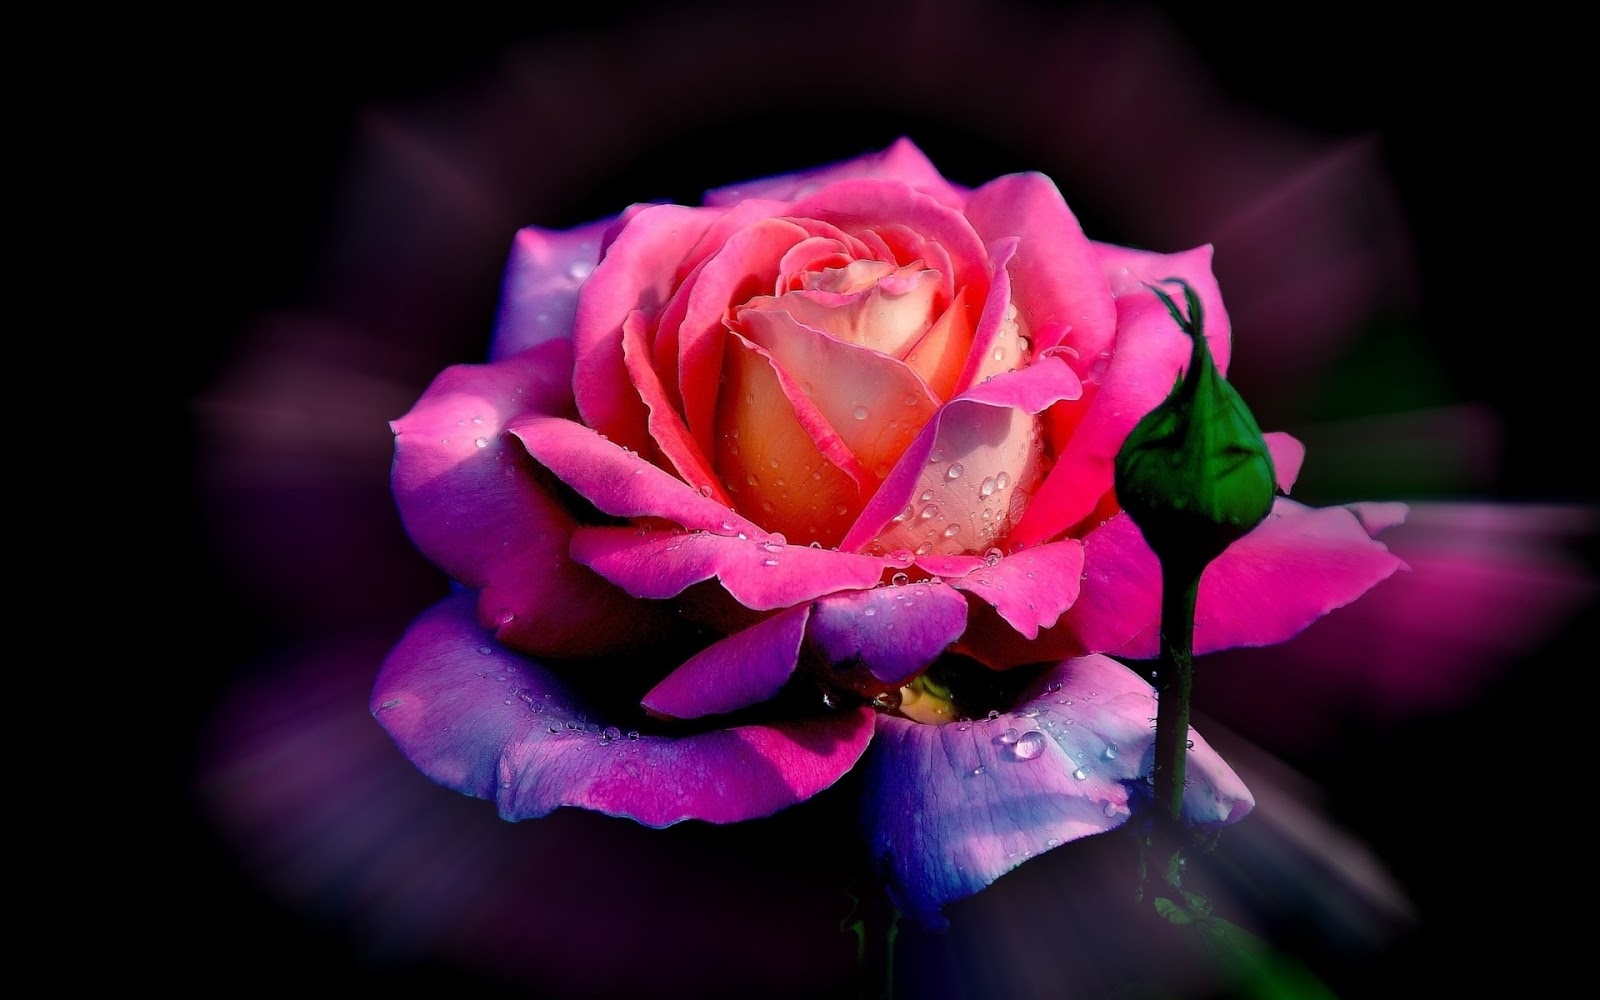 786+ Hình ảnh Hoa đẹp rạng rỡ và rung động trái tim - Ảnh nền máy tính chụp bông hoa hồng e ấp cùng gió - Viettelinternet24h.com